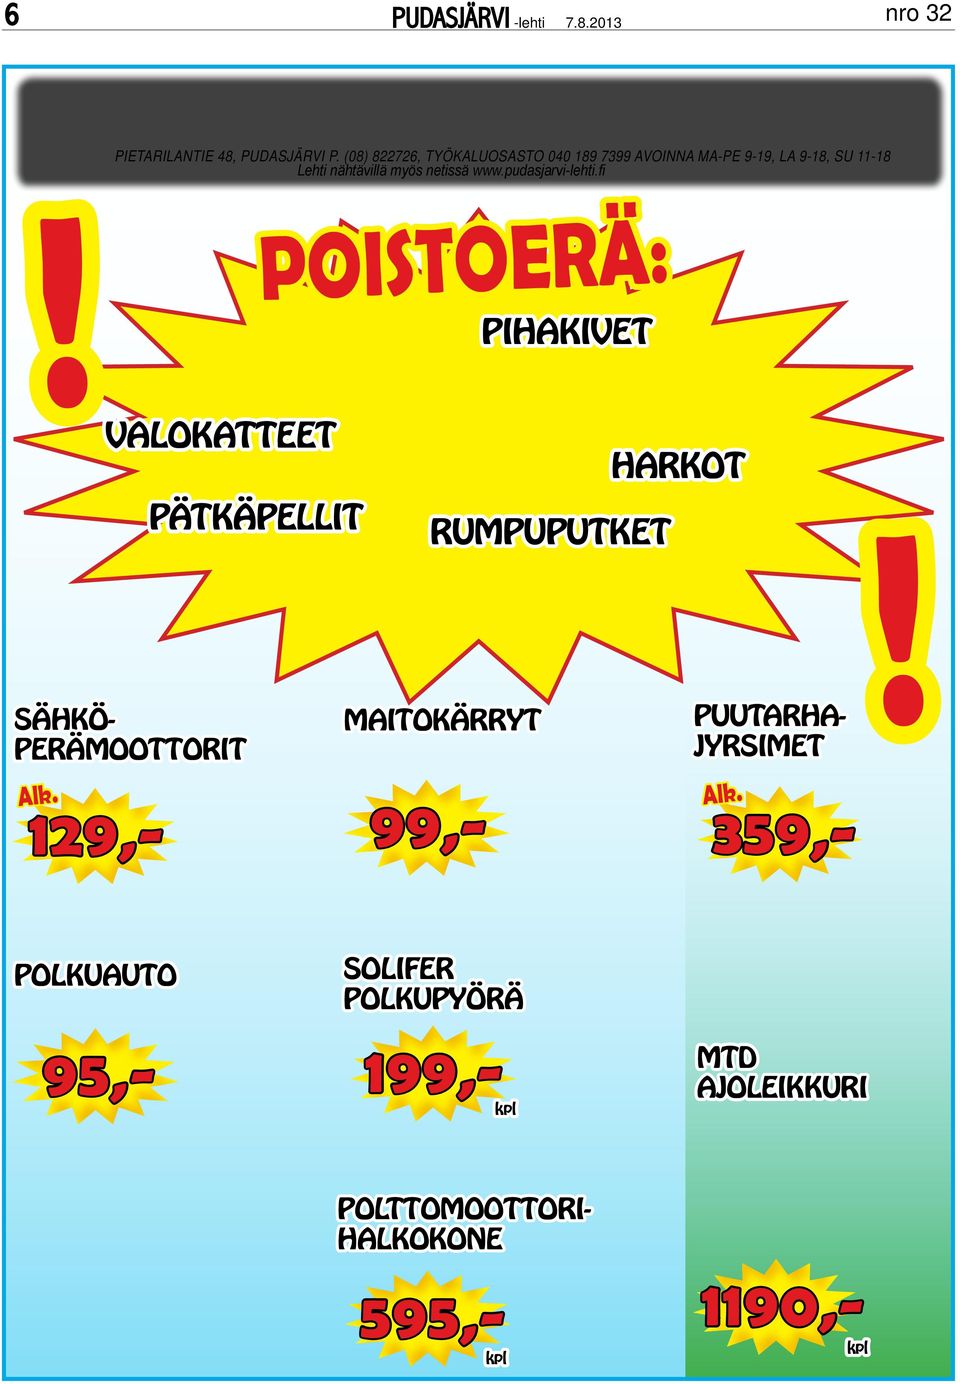 netissä www.pudasjarvi-lehti.fi POISTOERÄ: pihakivet!valokatteet Alk.